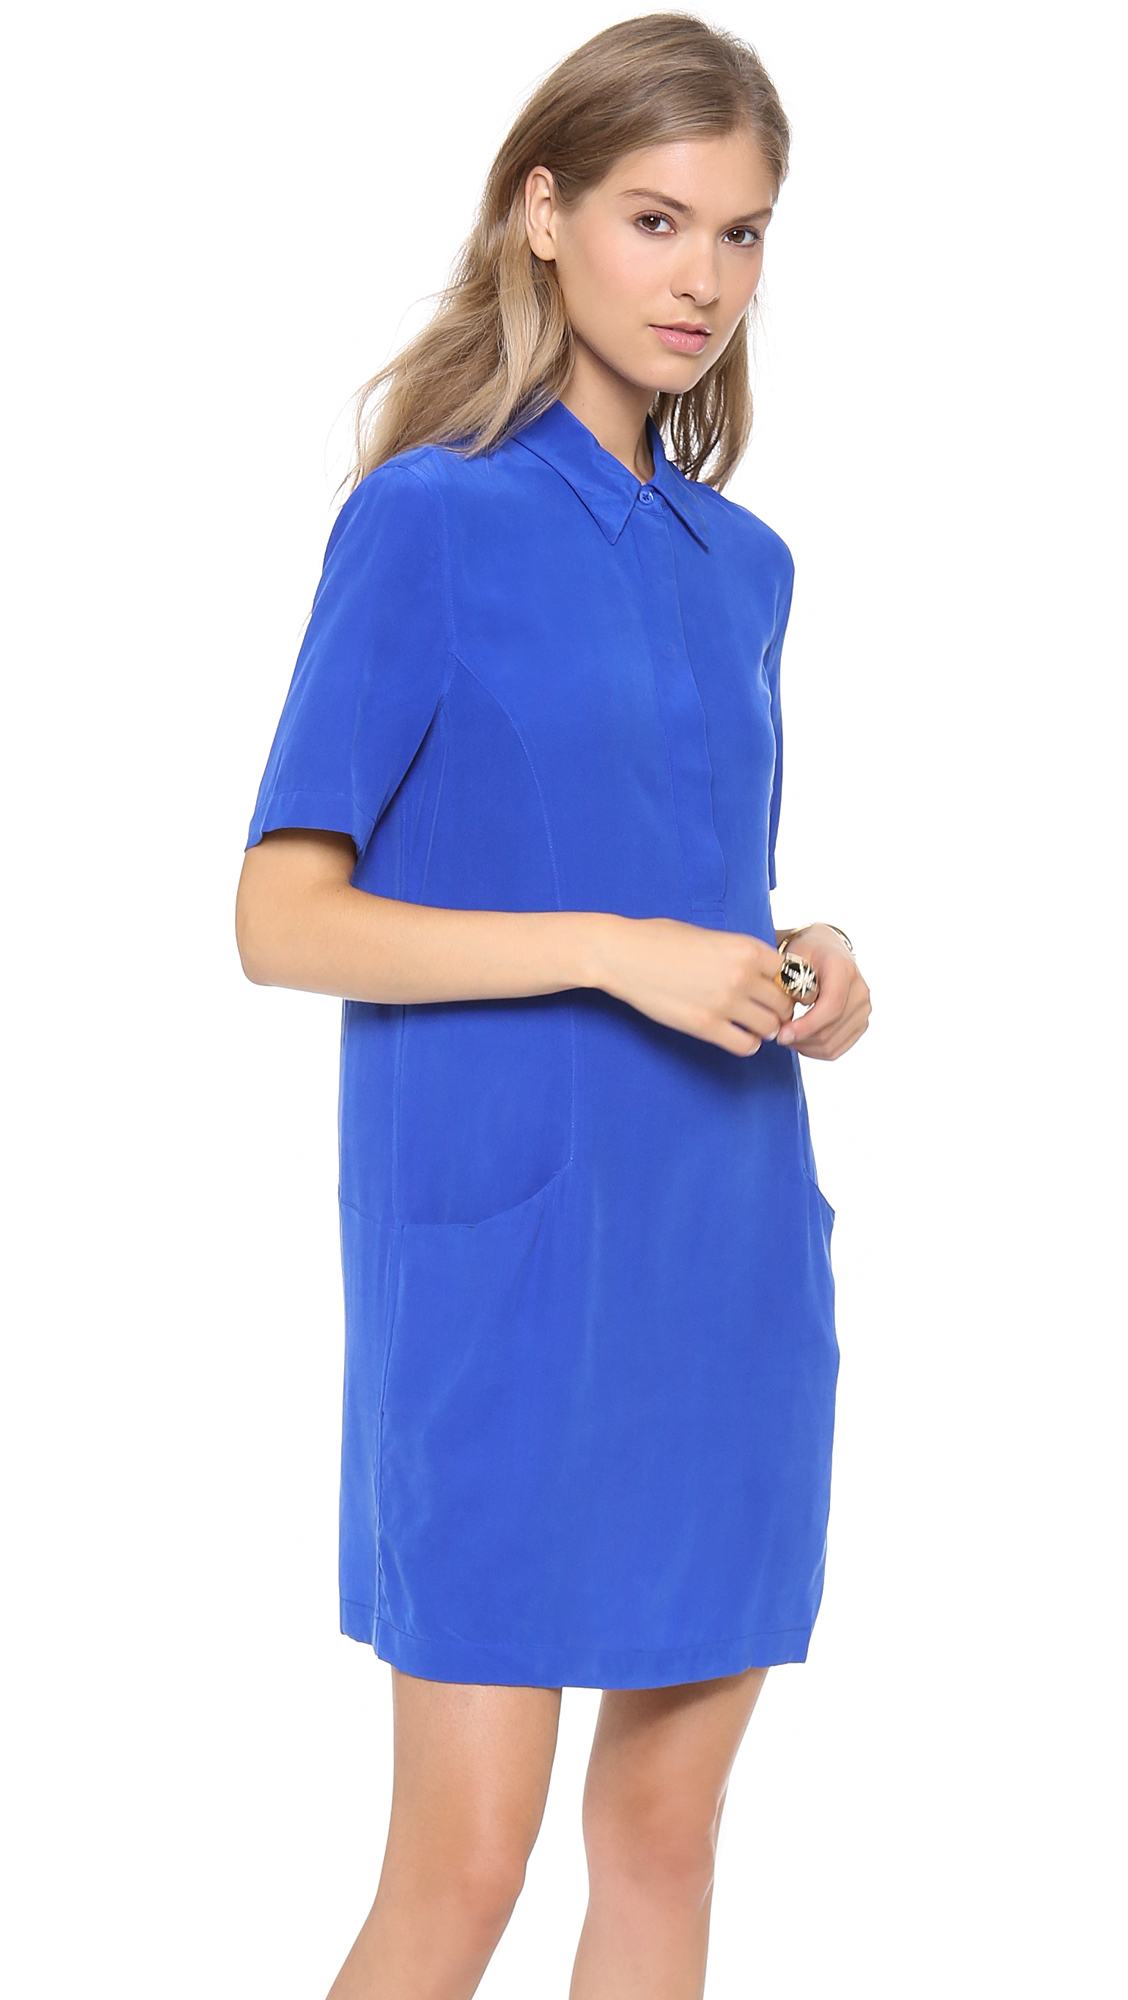 Lyst - Equipment Larkin Dress in Blue